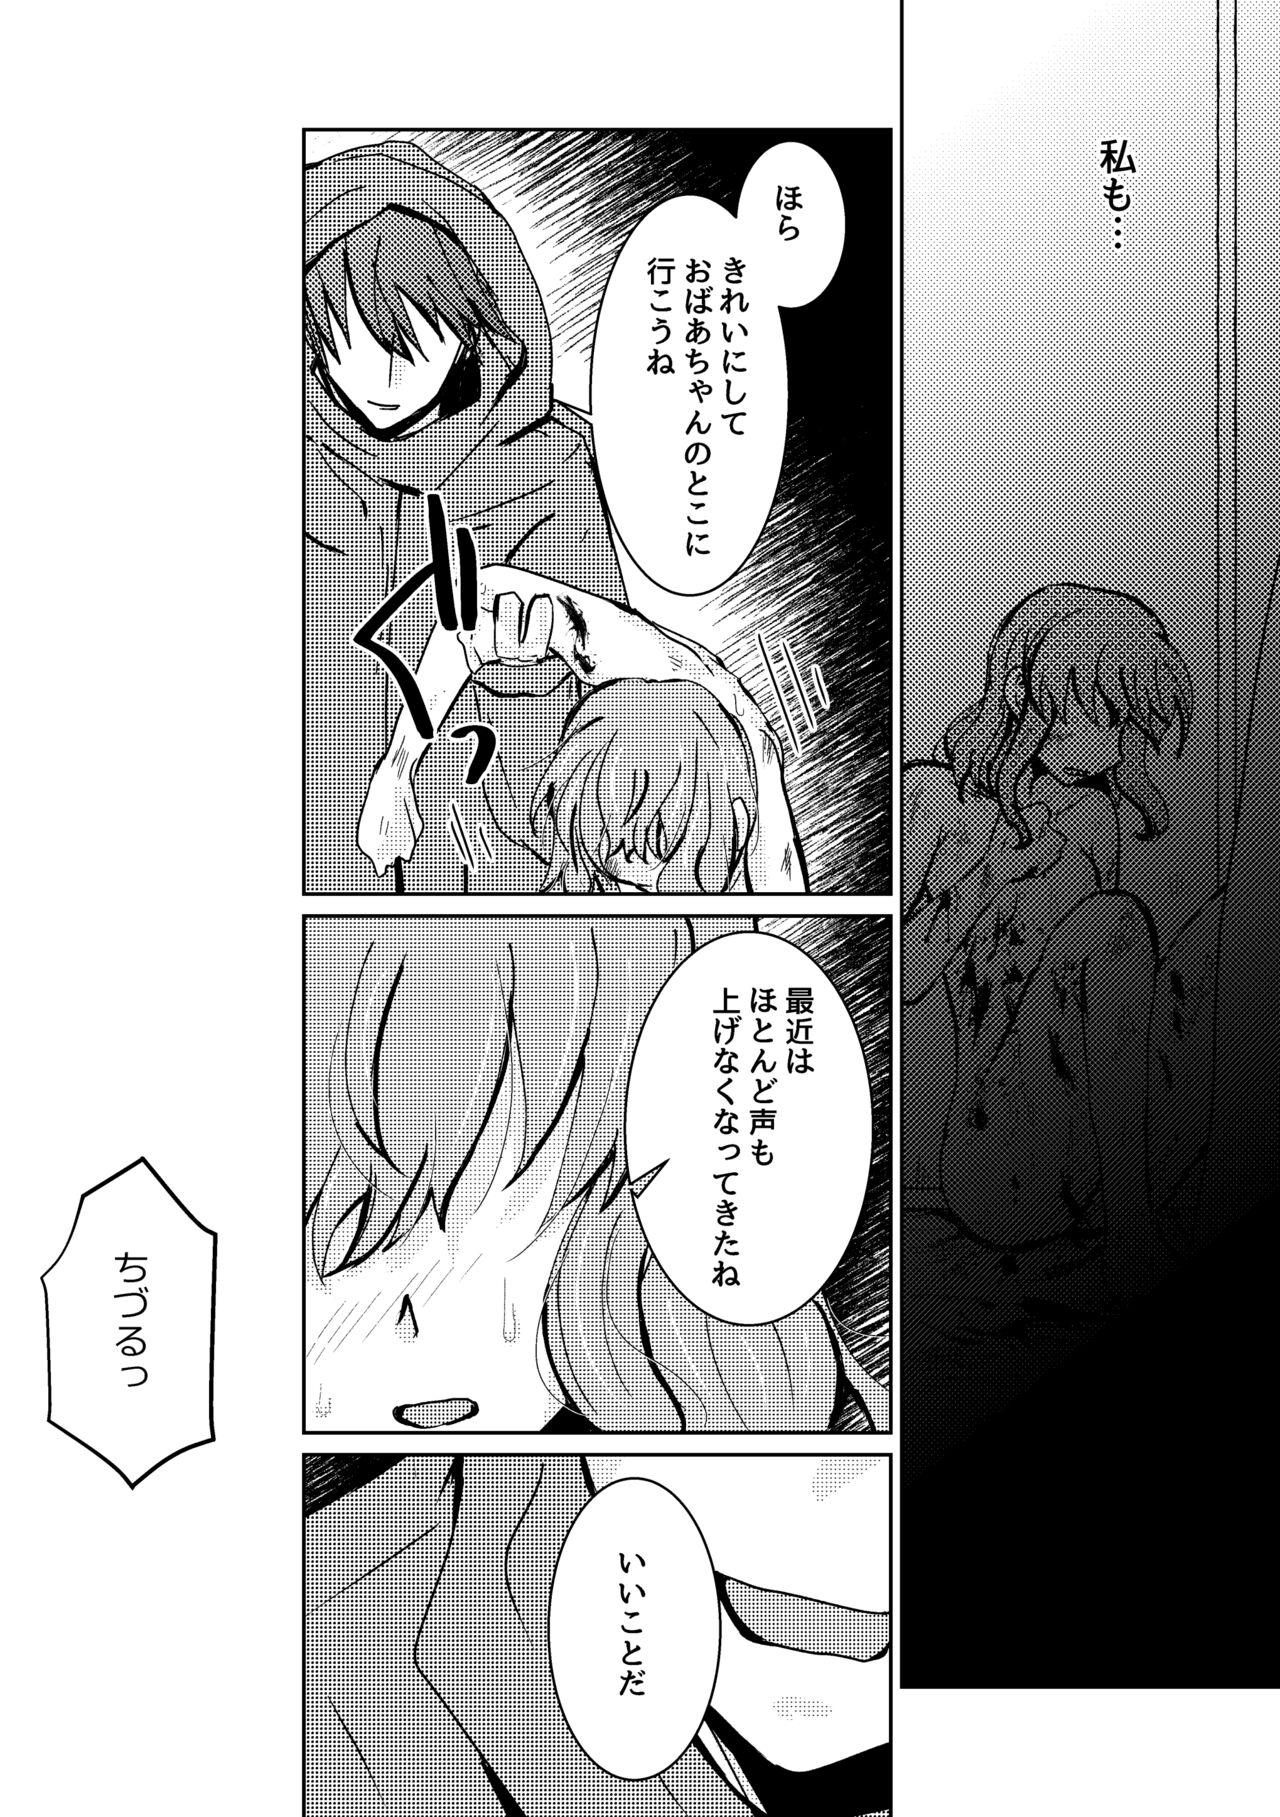 Trannies Kareya Yoru no Hanaka Episode 3 Pendeja - Page 7